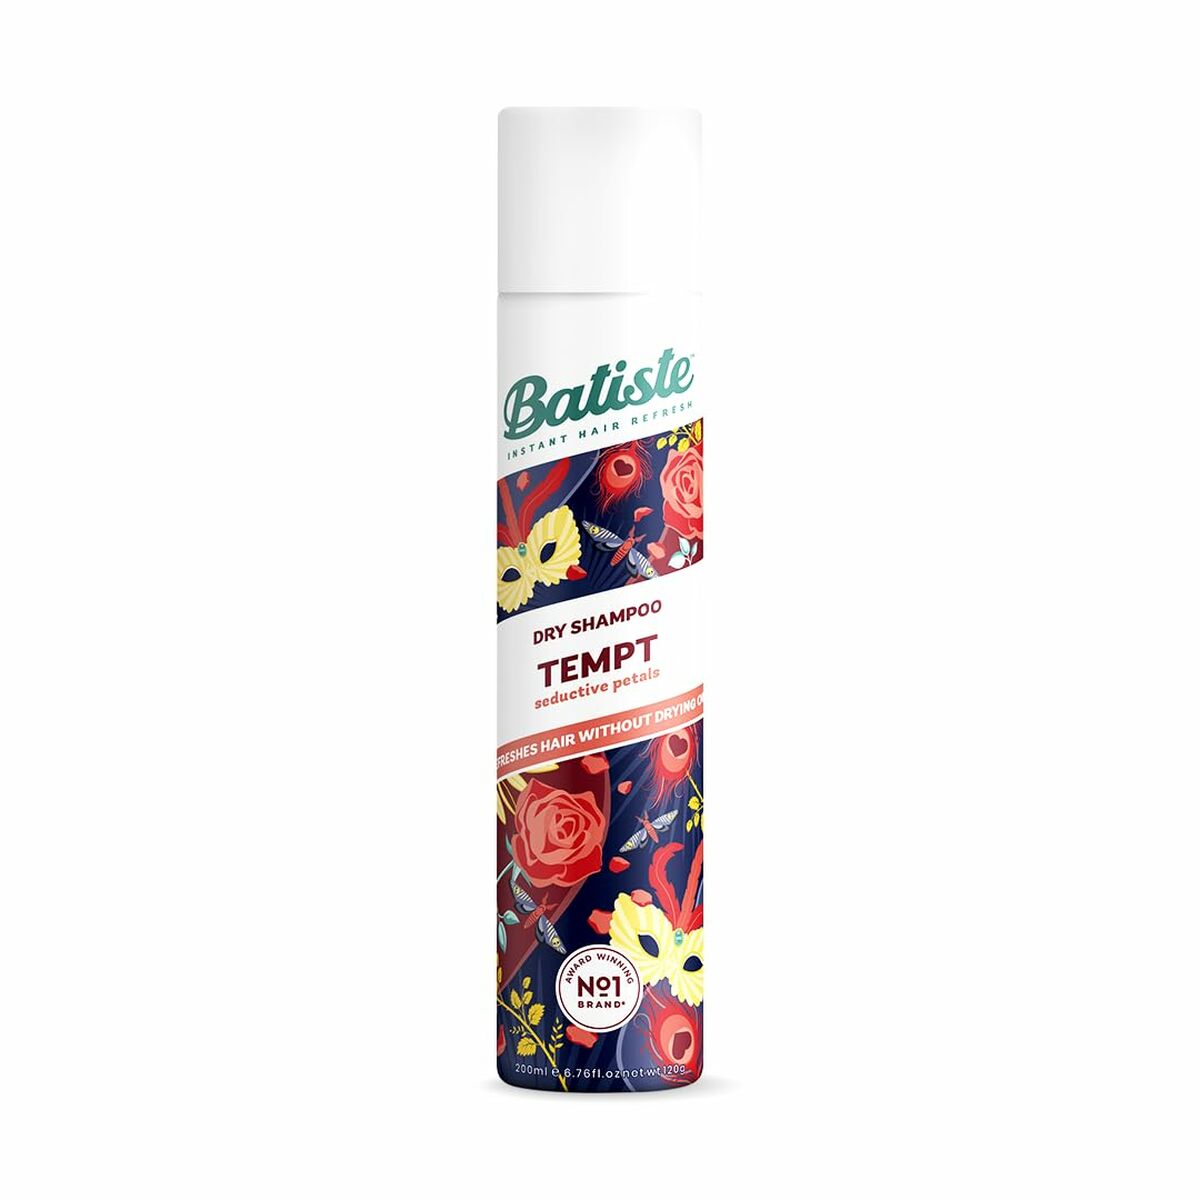 Shampoo Secco Batiste Tempt Seductive Petals 200 ml